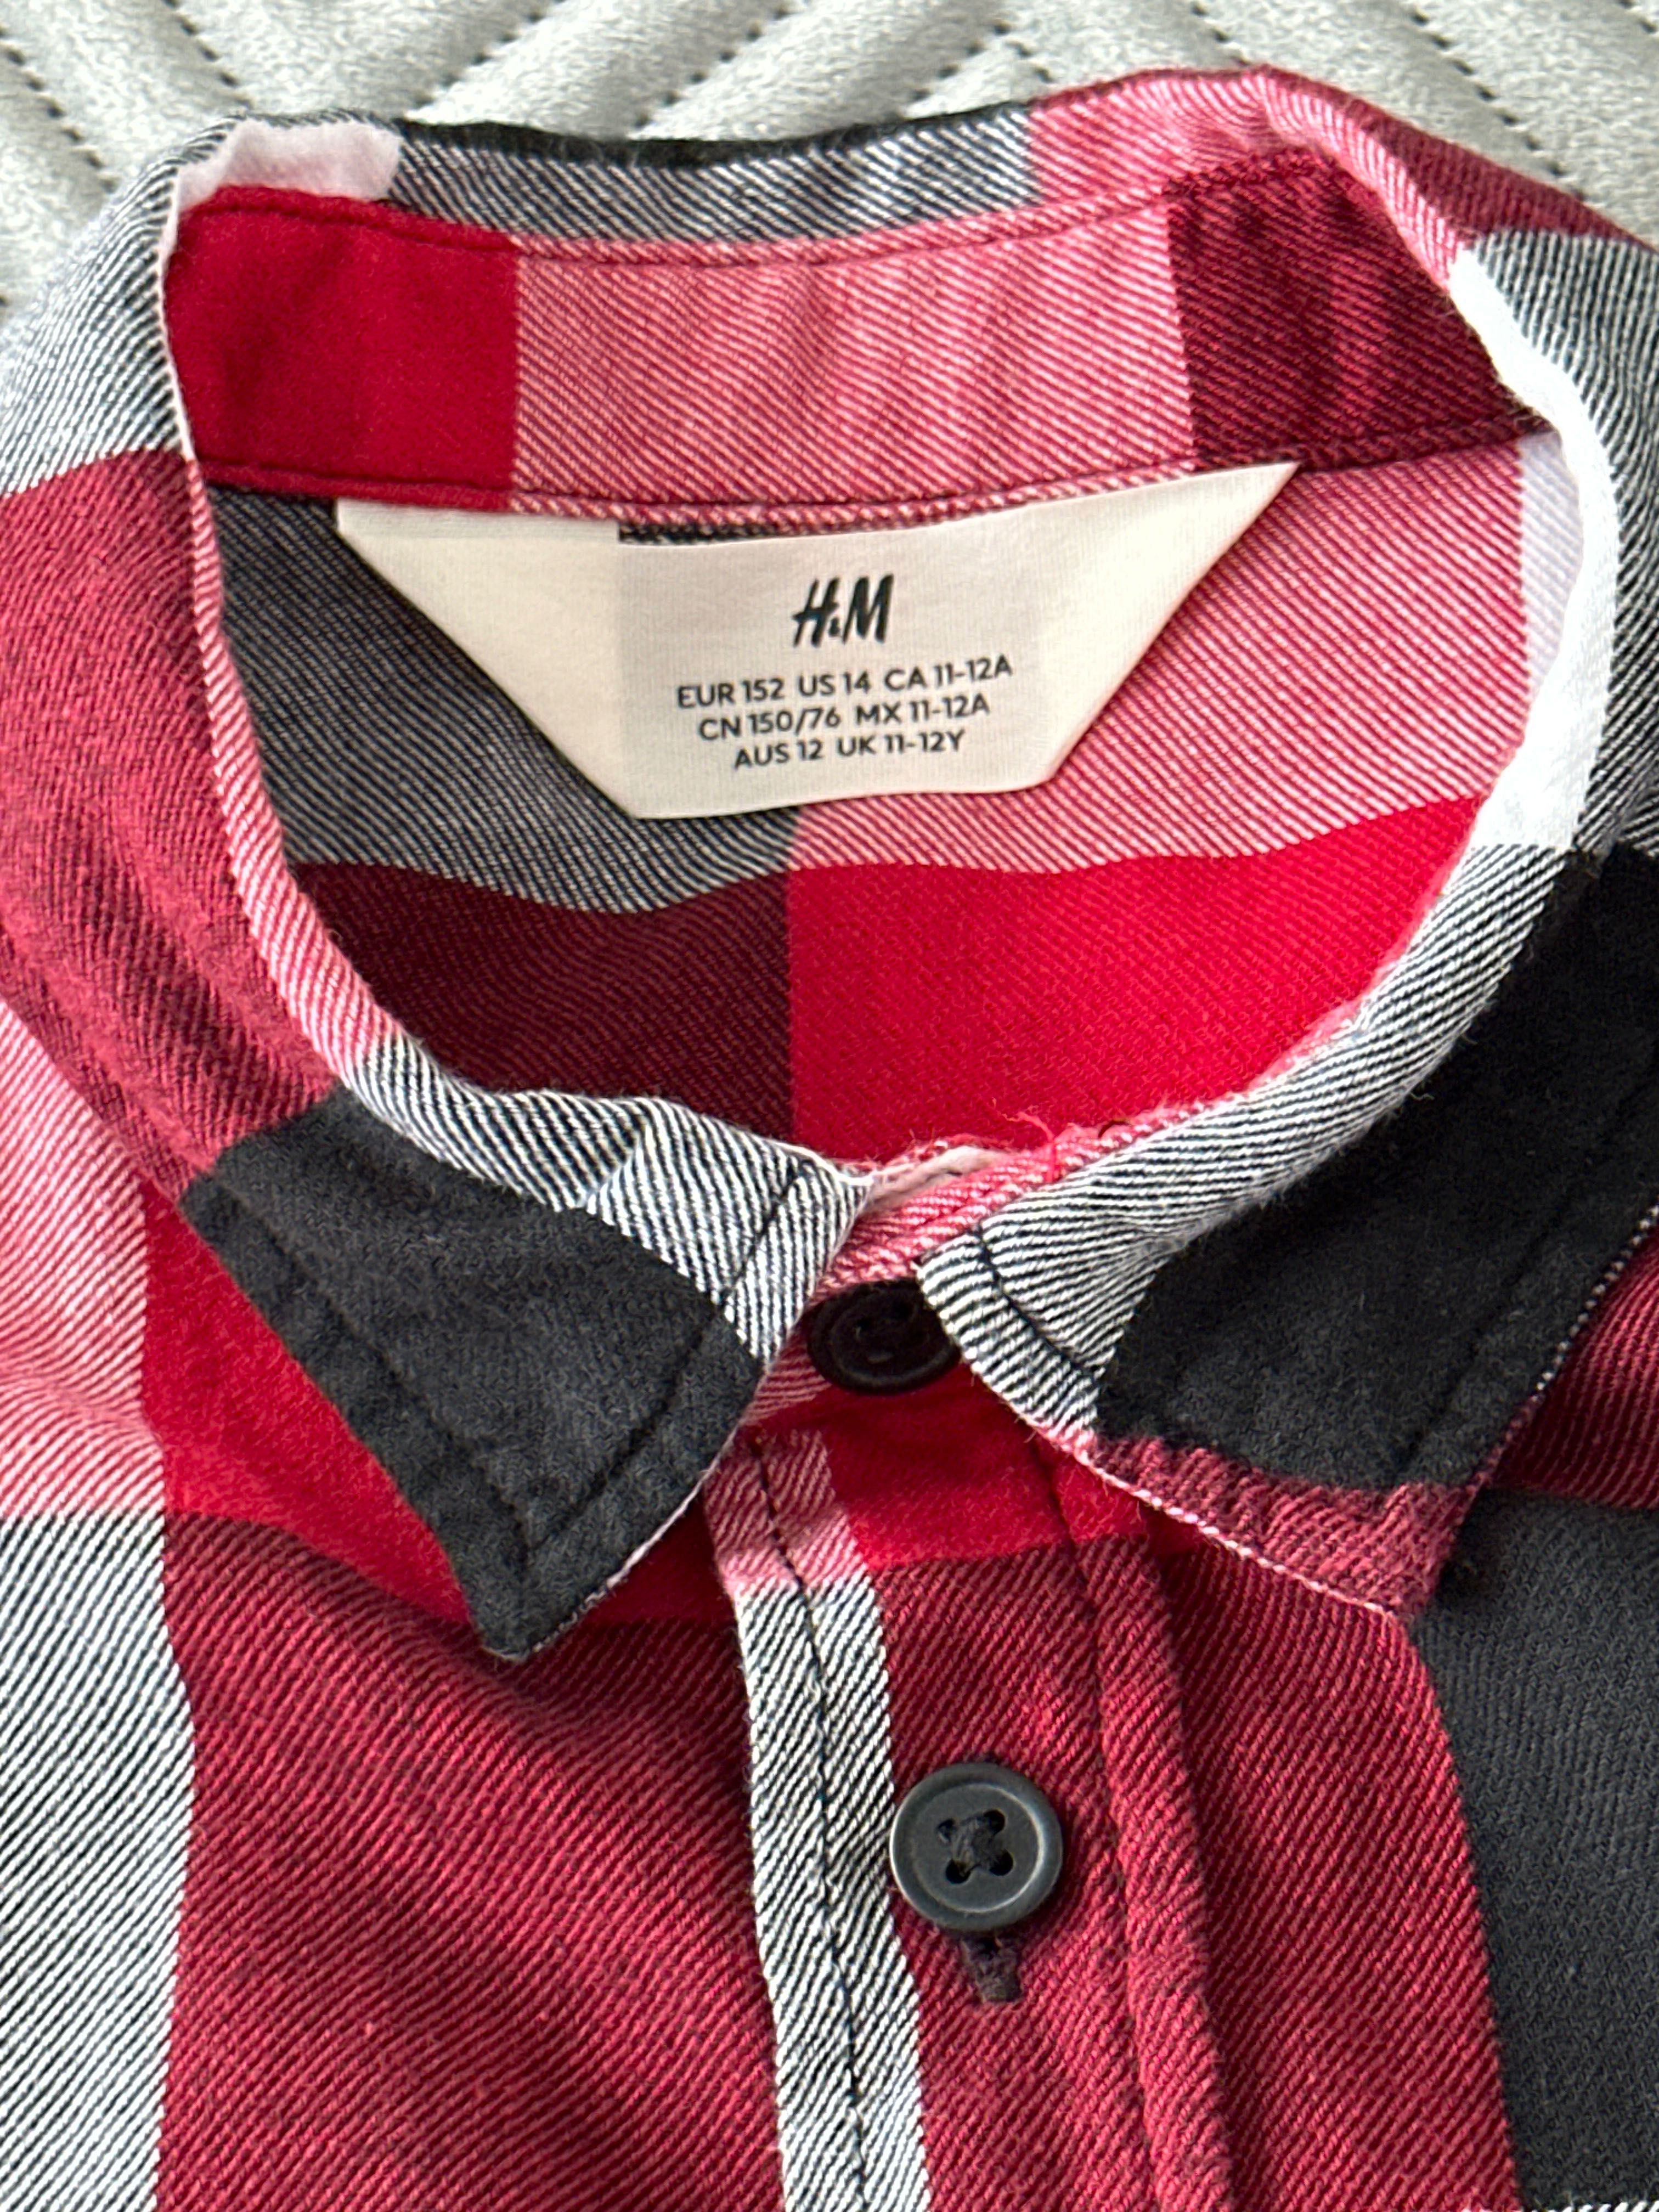 Koszula chłopięca marki h&m w rozmiarze 152 cm.